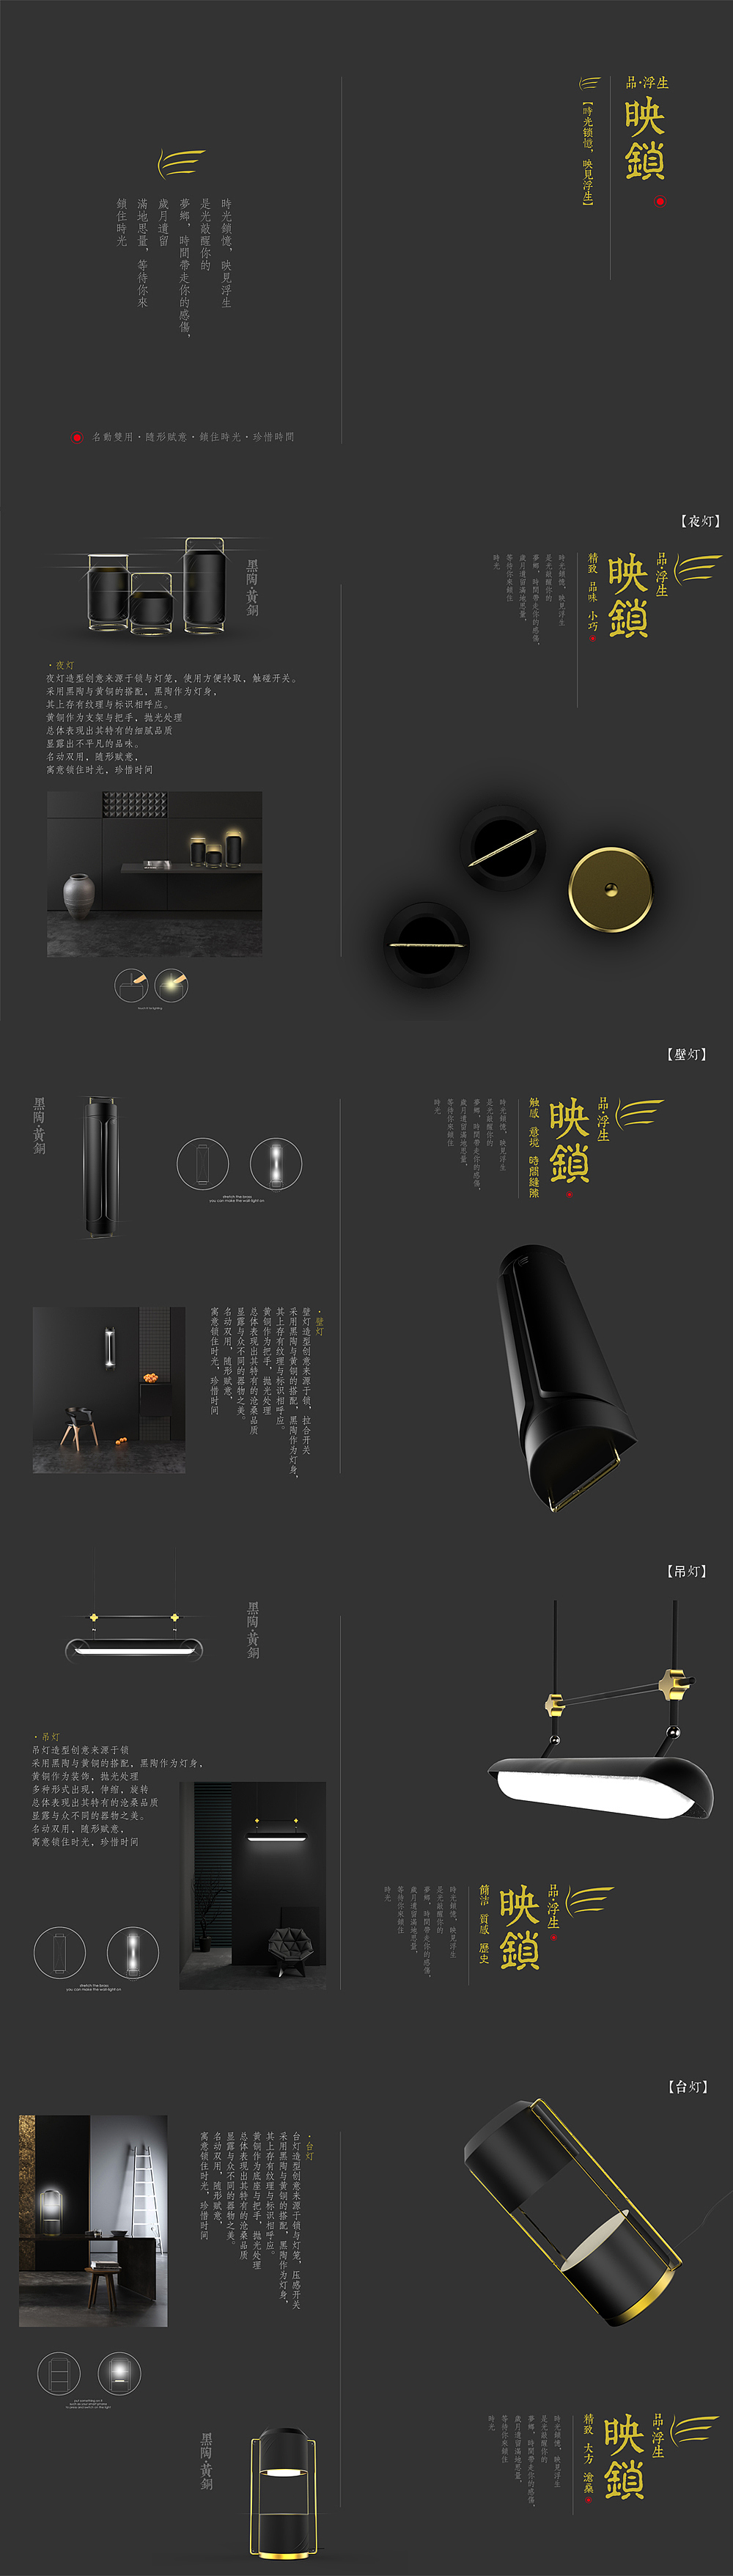 黑陶·黄铜，yeutz设计，智能家居led灯，锁，时光，语意·系统，